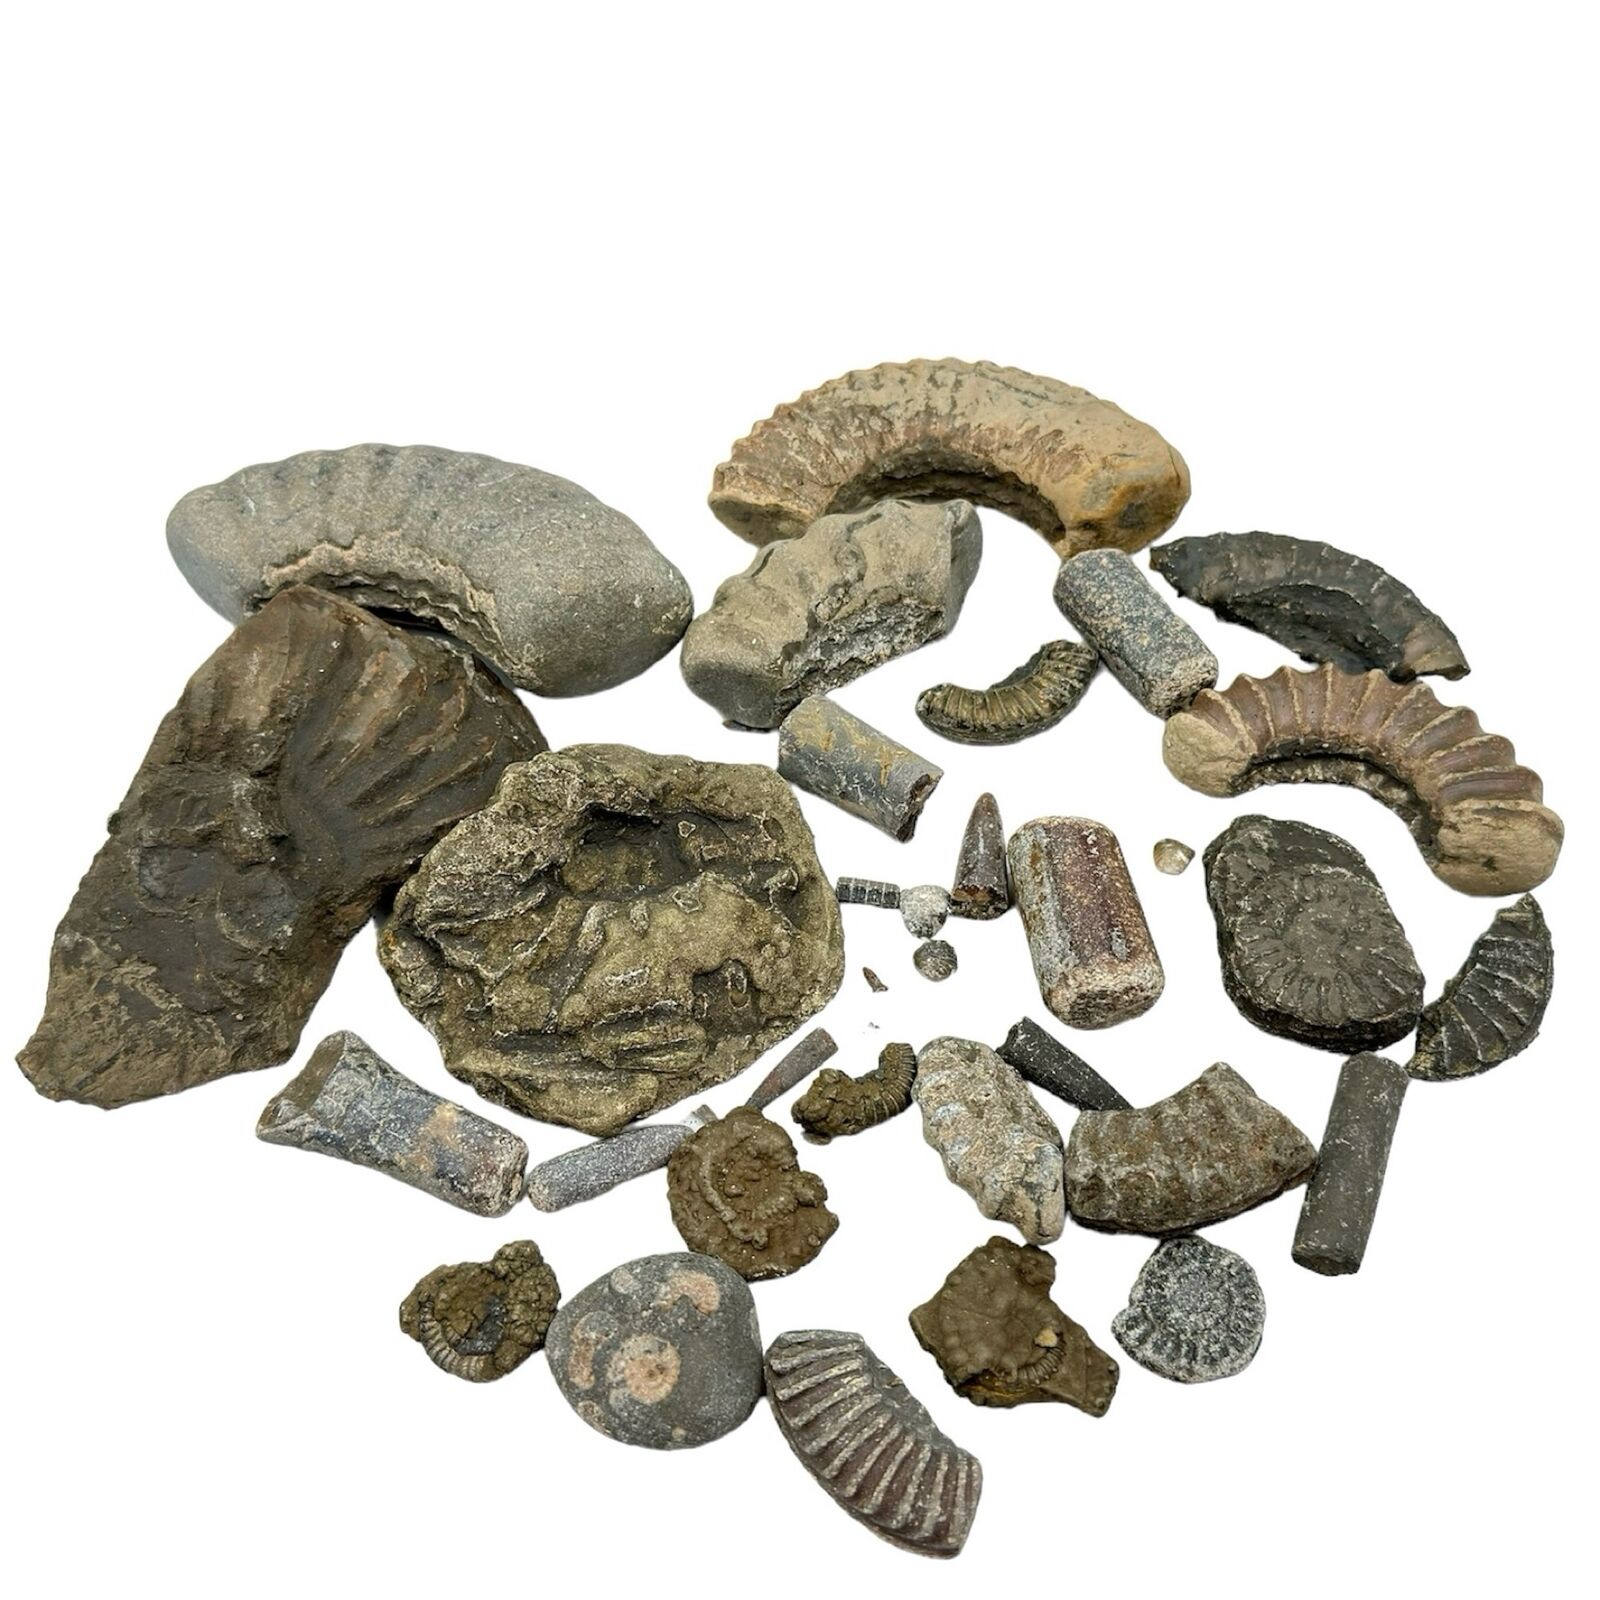 1kg Bulk Jurassic Coast 33 x Fossils Budget Mix - Dorset - LOT - Genuine